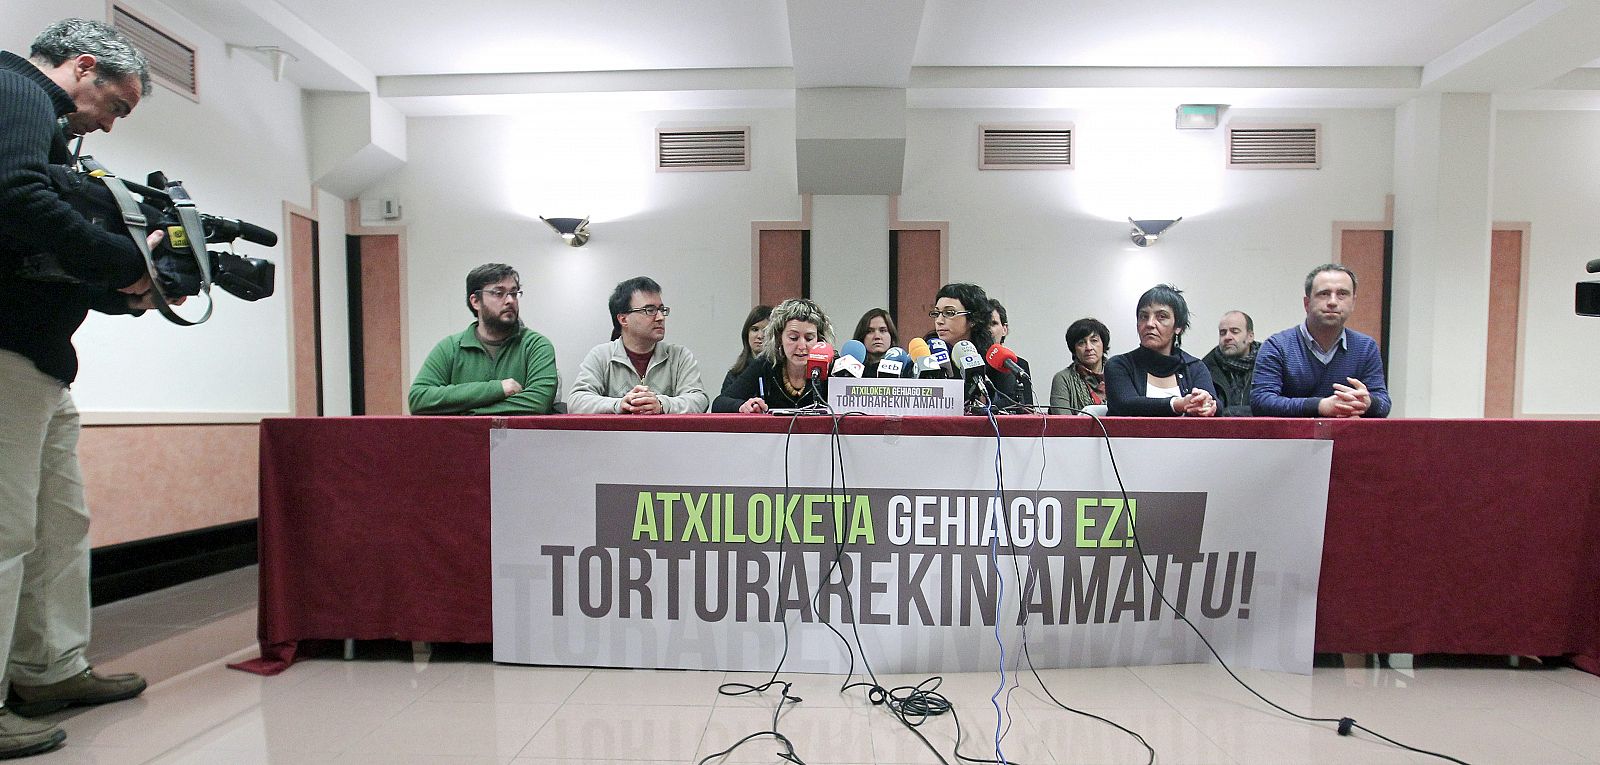 EA, Aralar y Alternatiba exigen al Gobierno acabar con las detenciones "políticas" de presuntos terroristas.